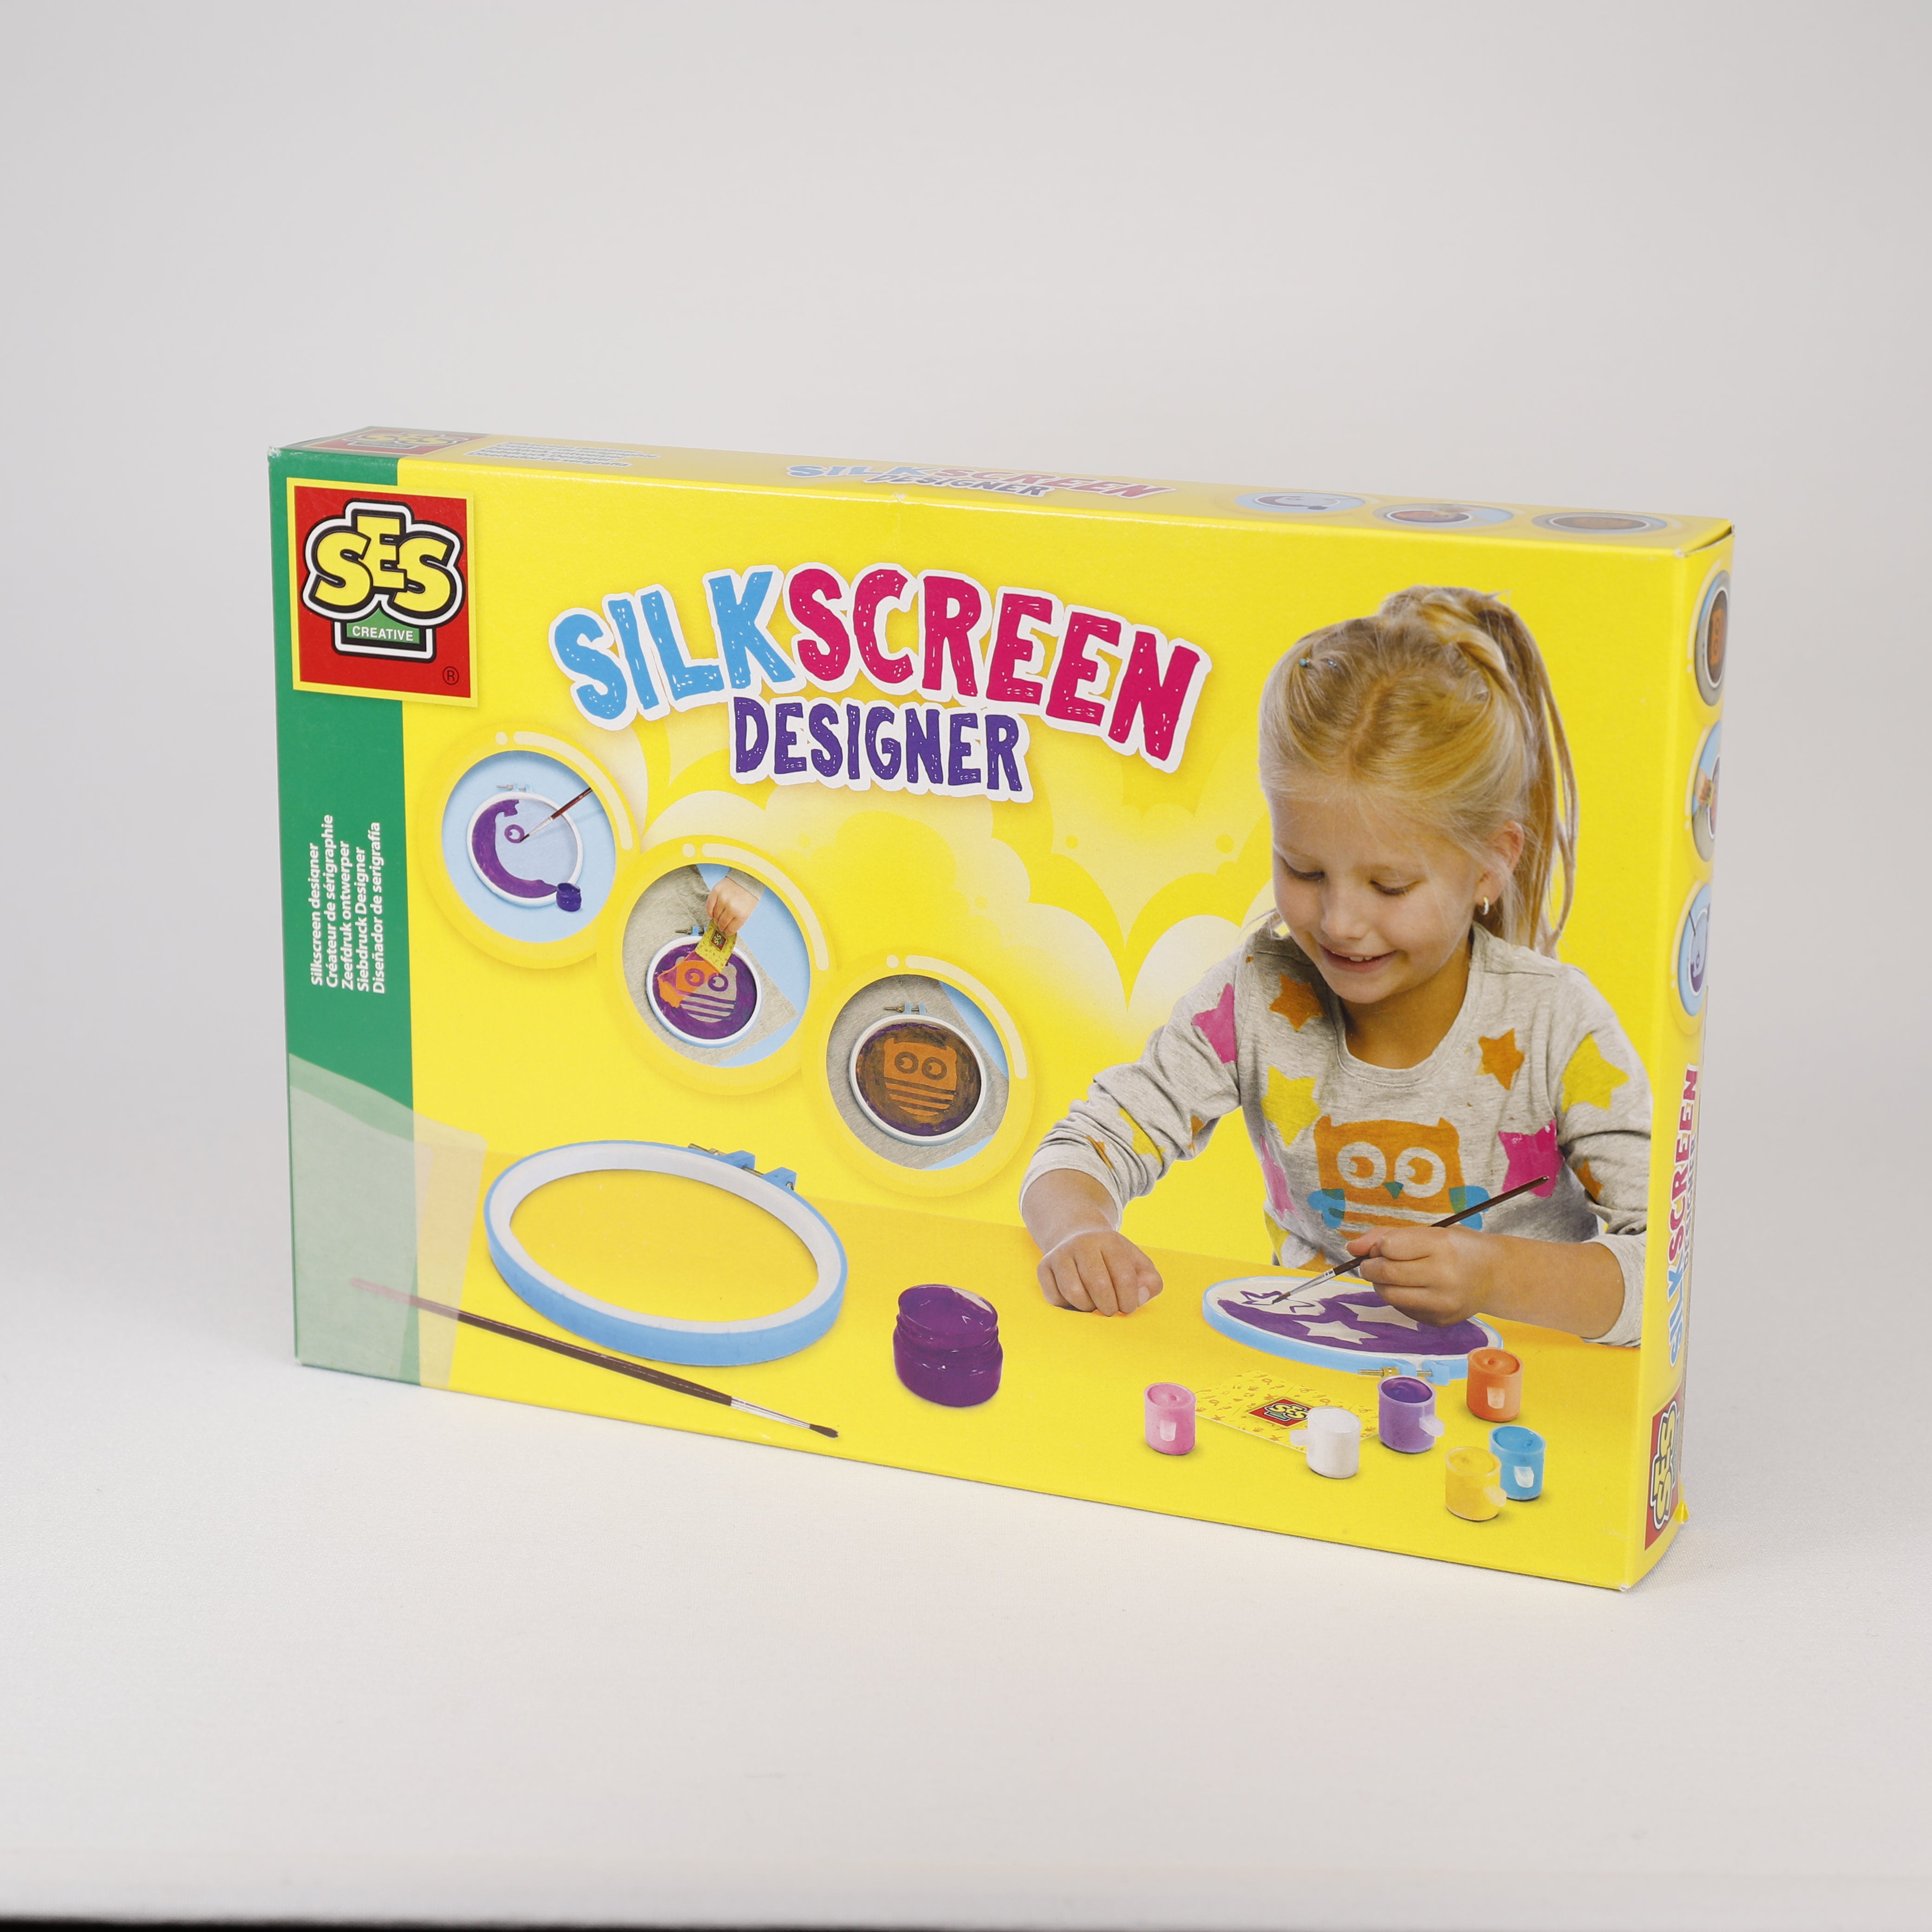 Siebdruck & Silkscreen Designer, T-shirts Selber Gestallten 20 x 30 cm, Spielzeug, SES